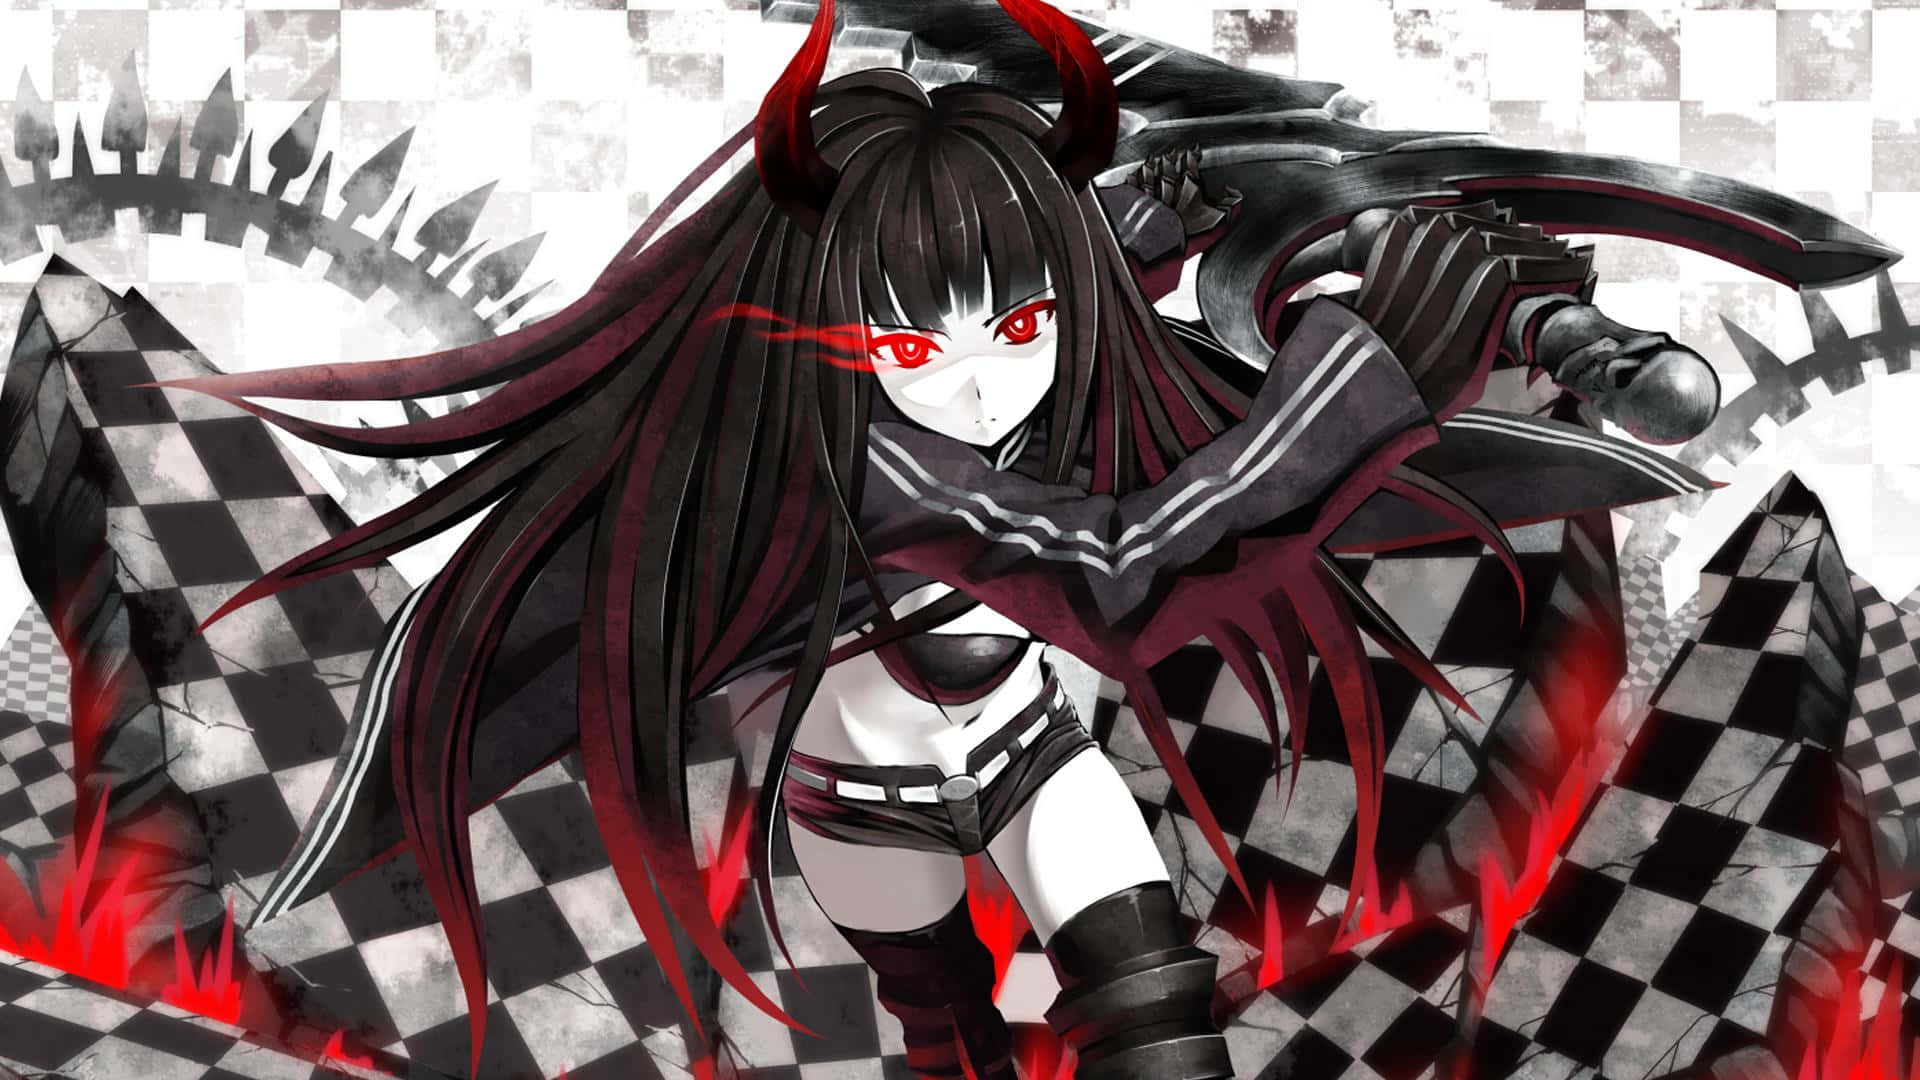 Unailustración Vibrante De Una Chica Anime Con Cabello Rojo Y Negro. Fondo de pantalla